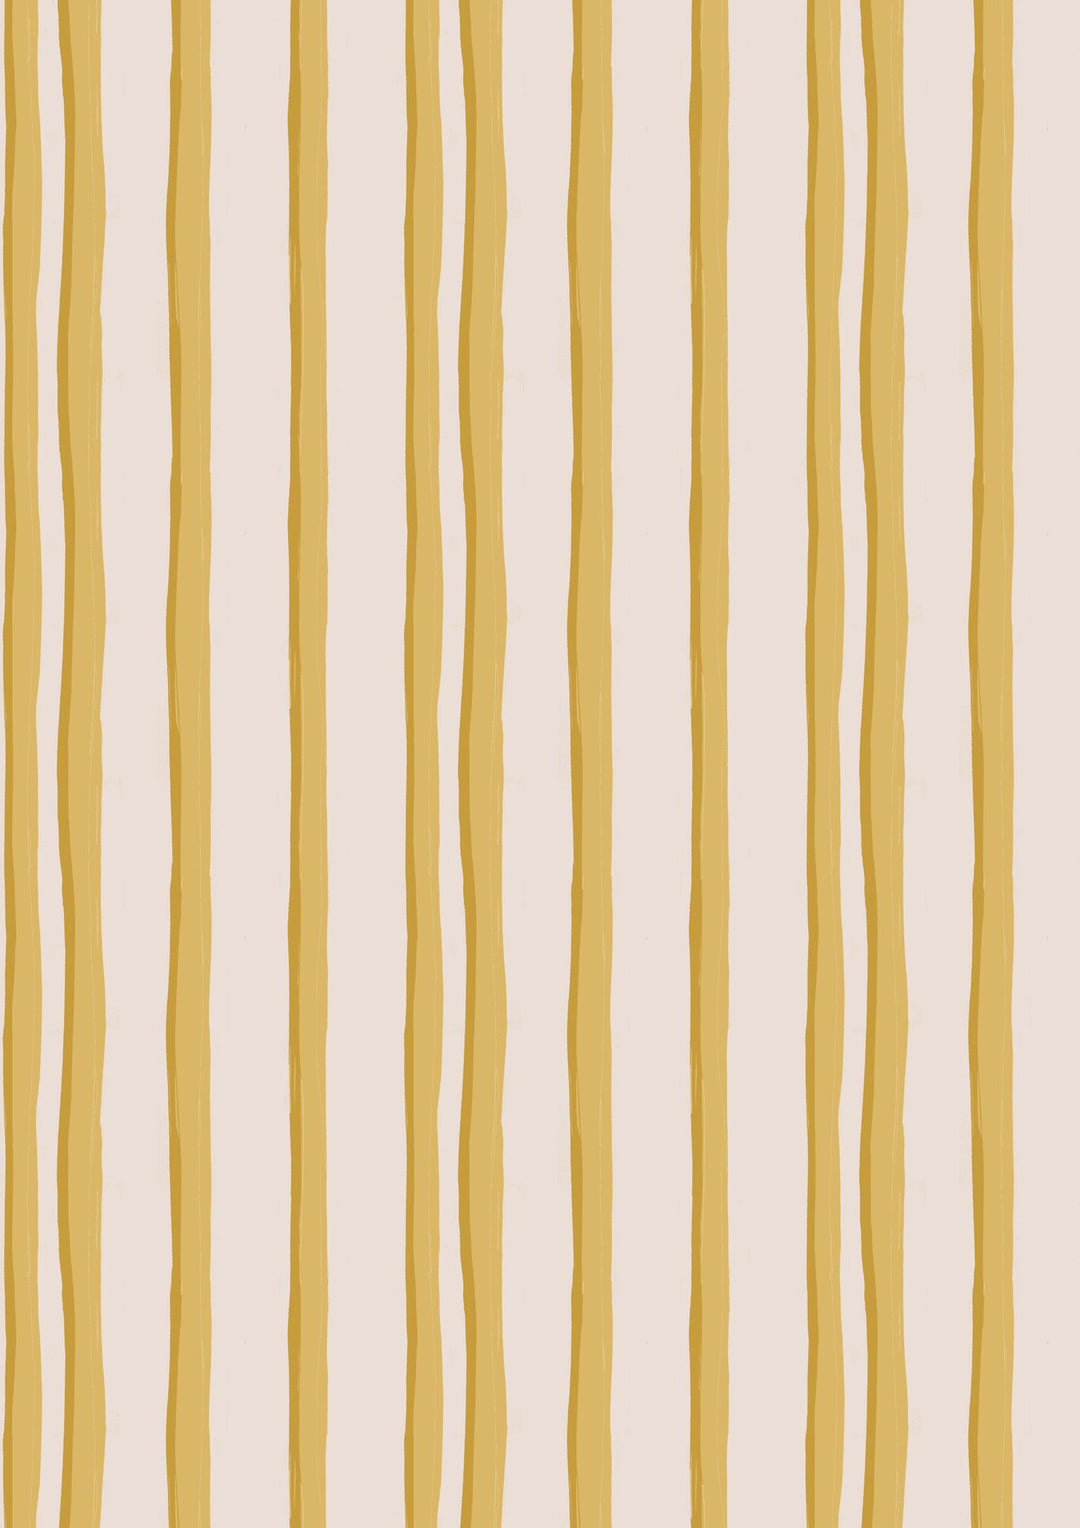 Annika-reed-studio-somerset-stripes-wallpaper-in-yellow-hand-block-printed-british-designer